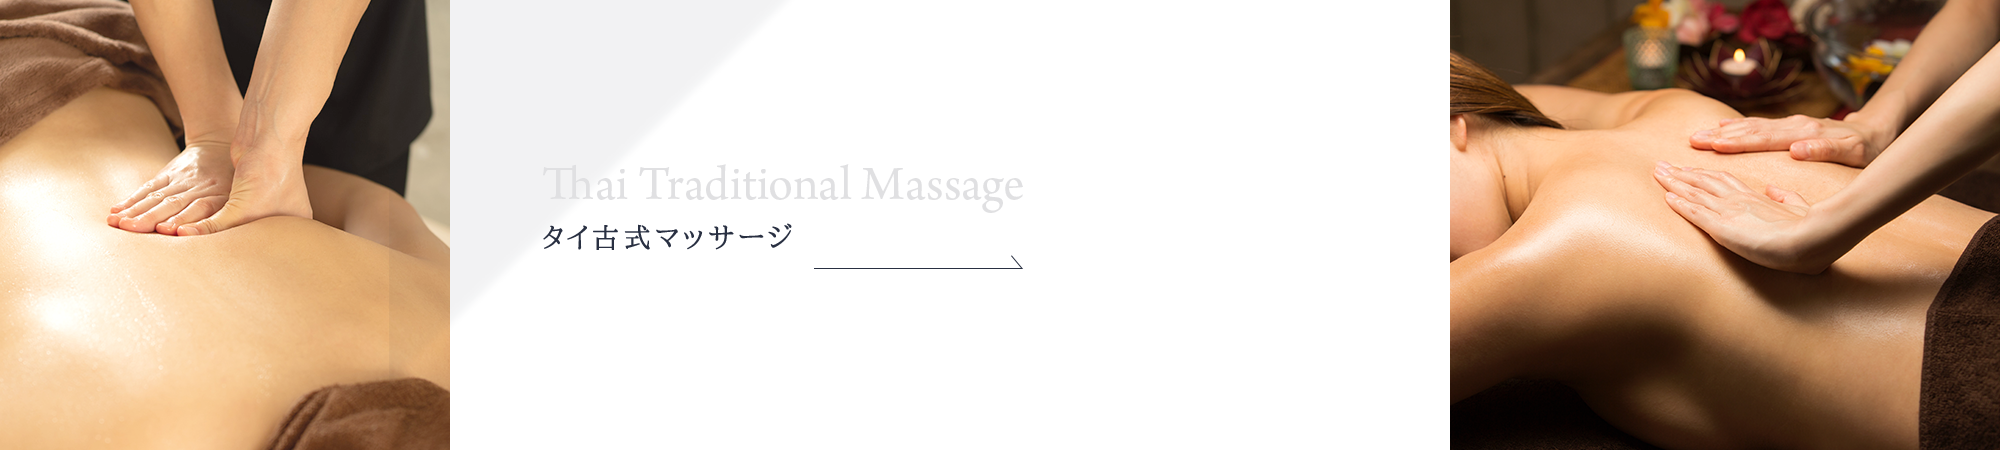 _banner_massage_f